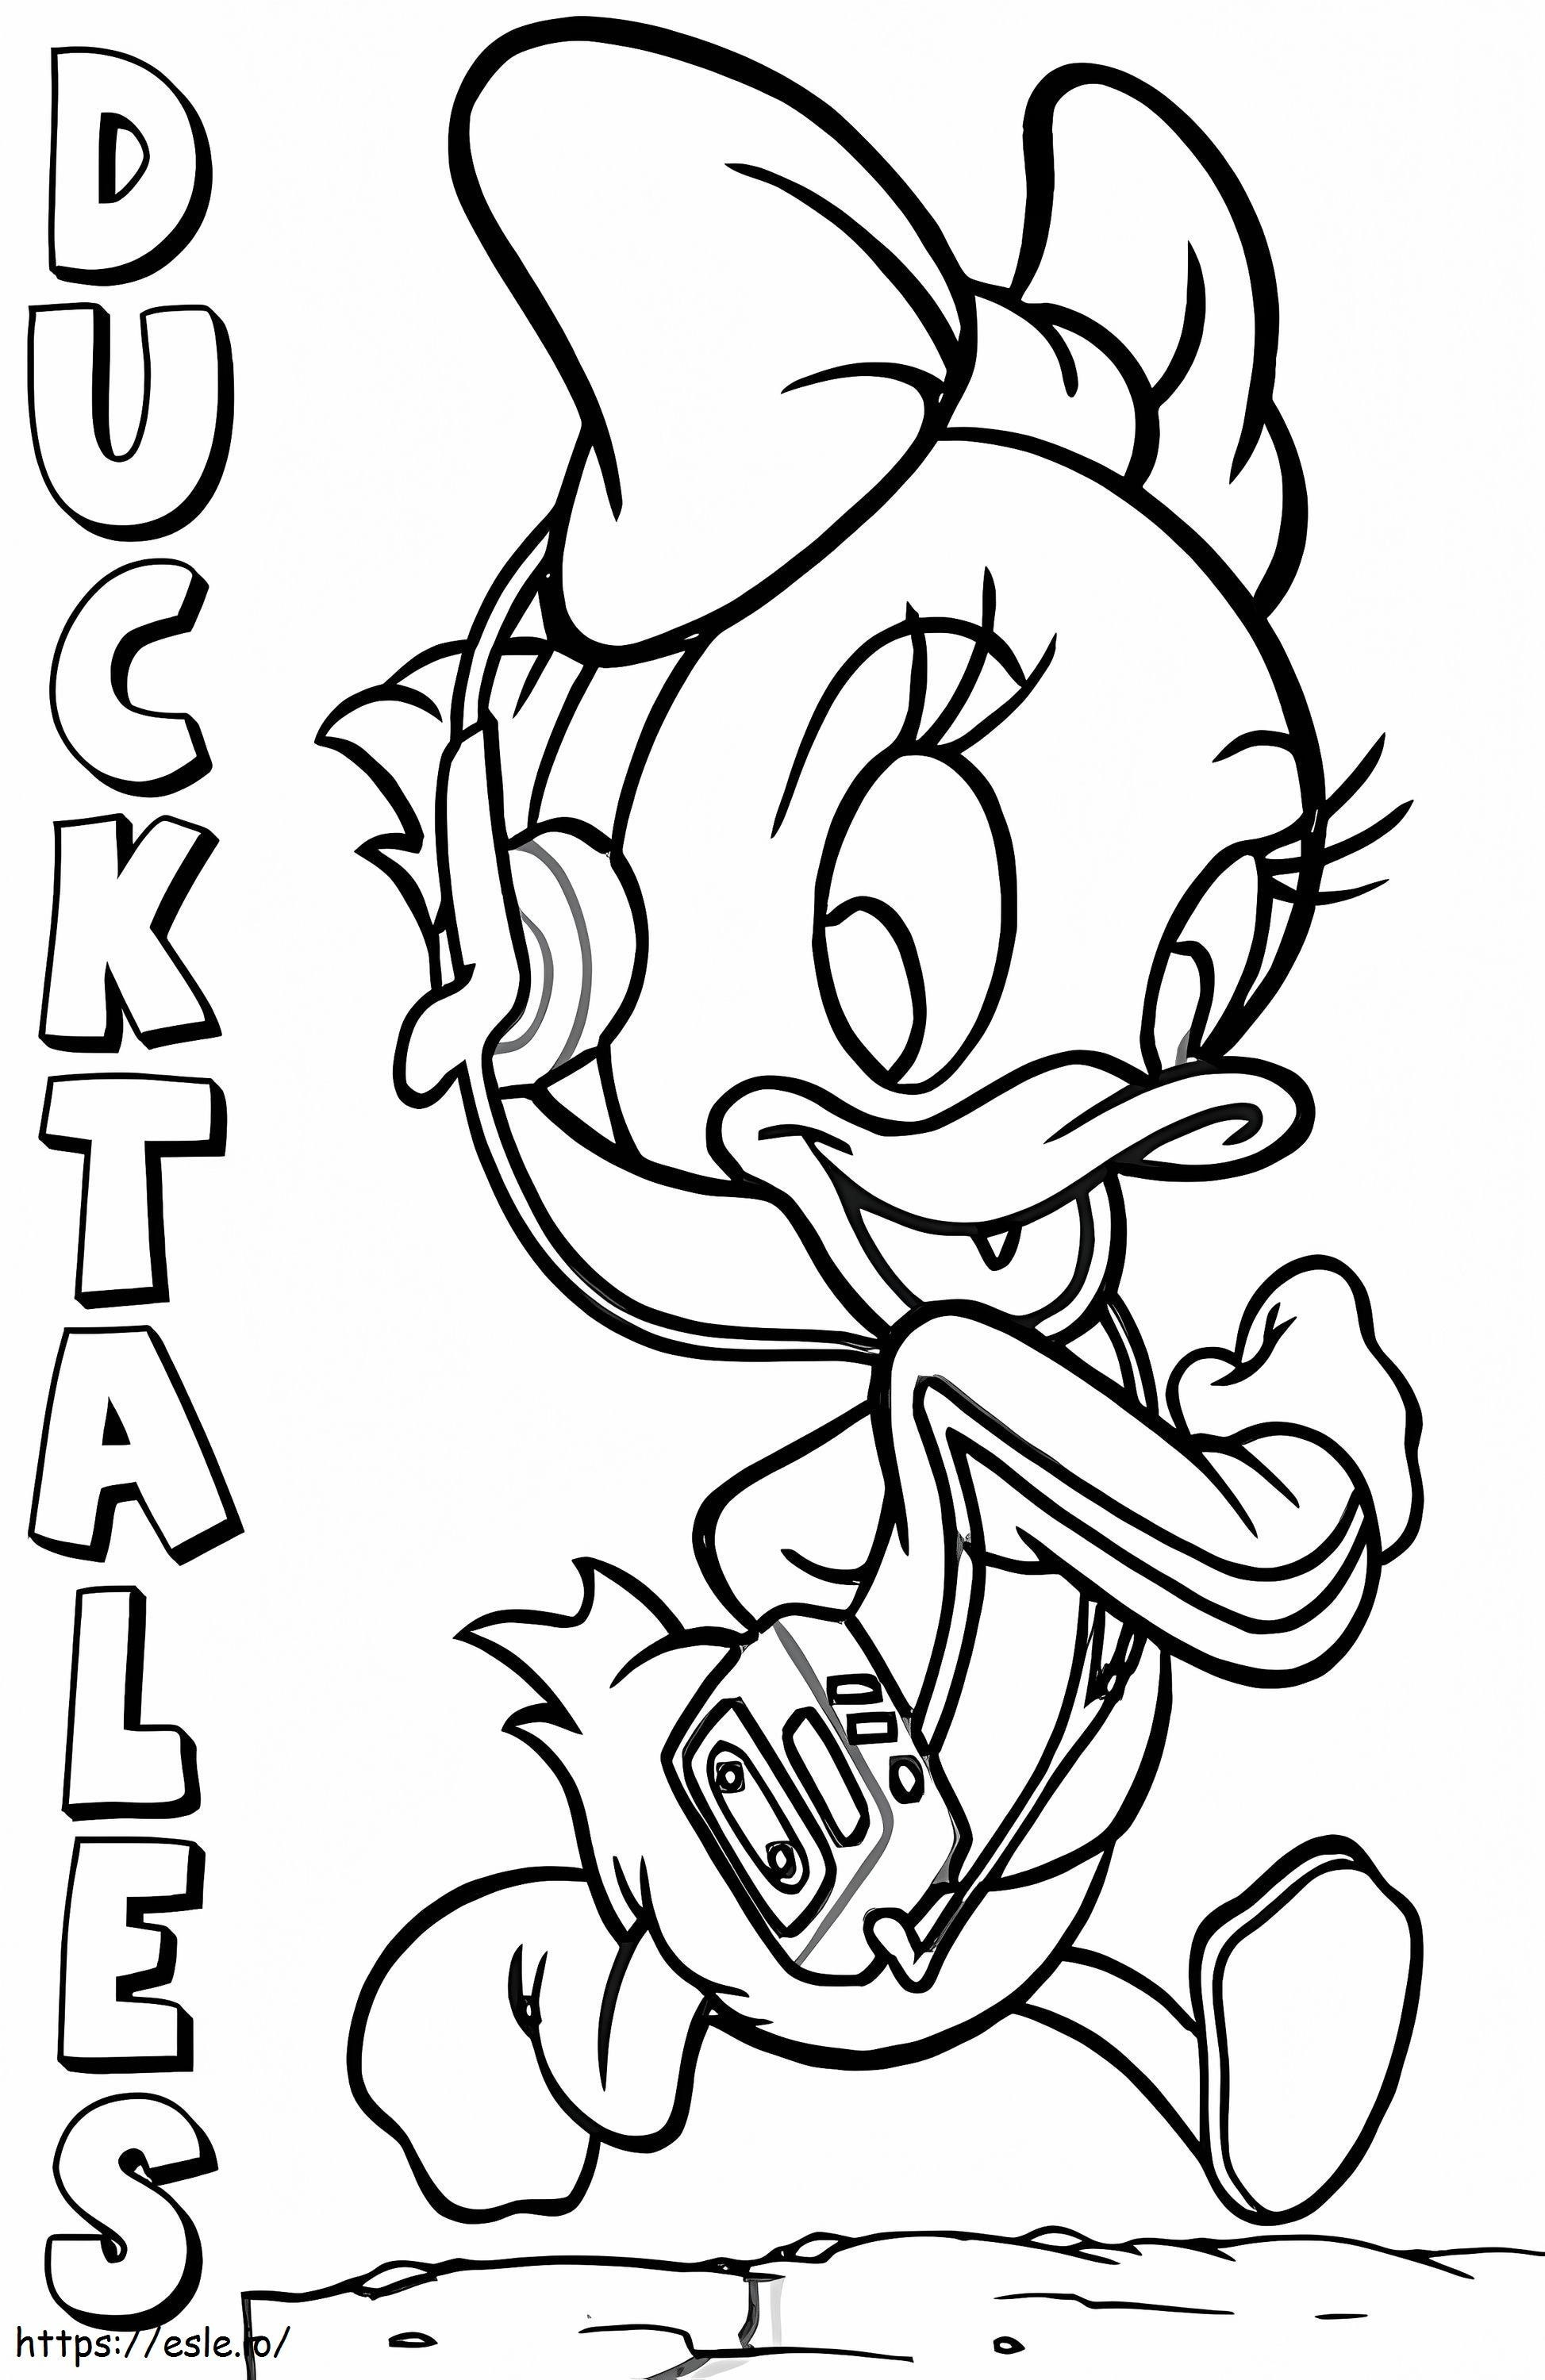 Webby Vanderquack In Ducktales coloring page